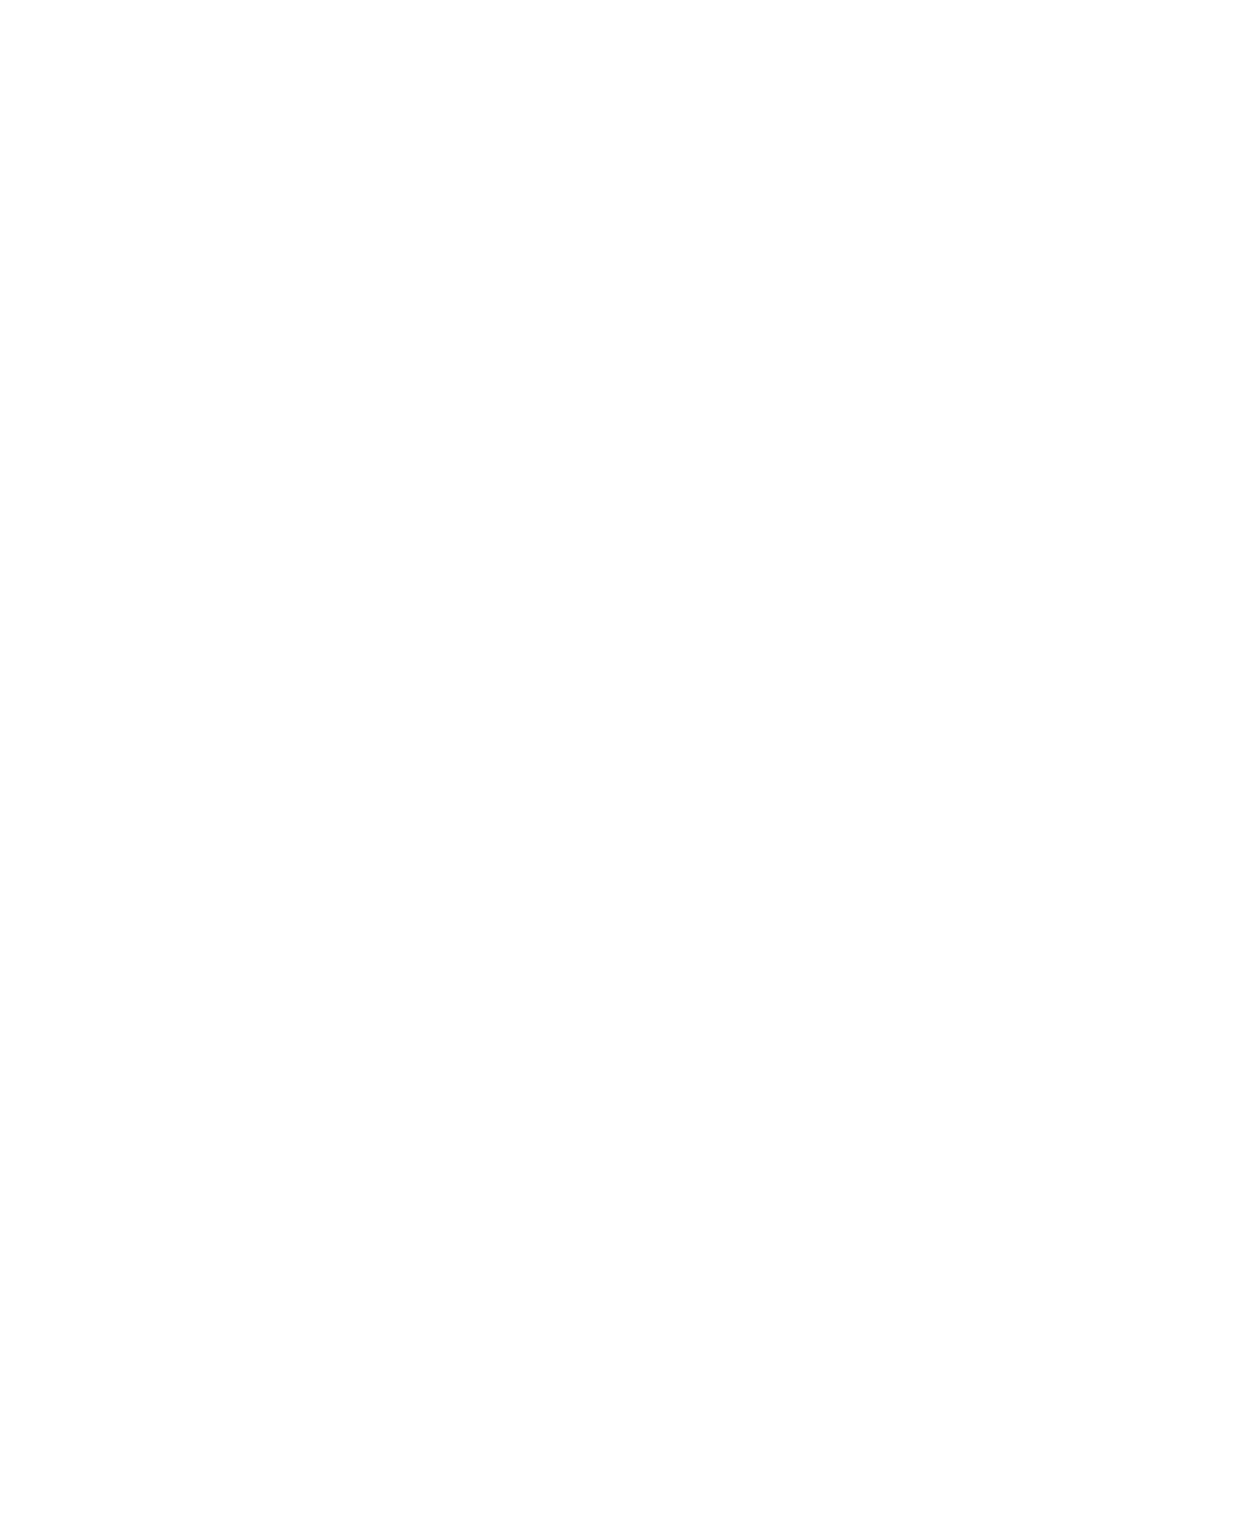 Evercore logo pour fonds sombres (PNG transparent)